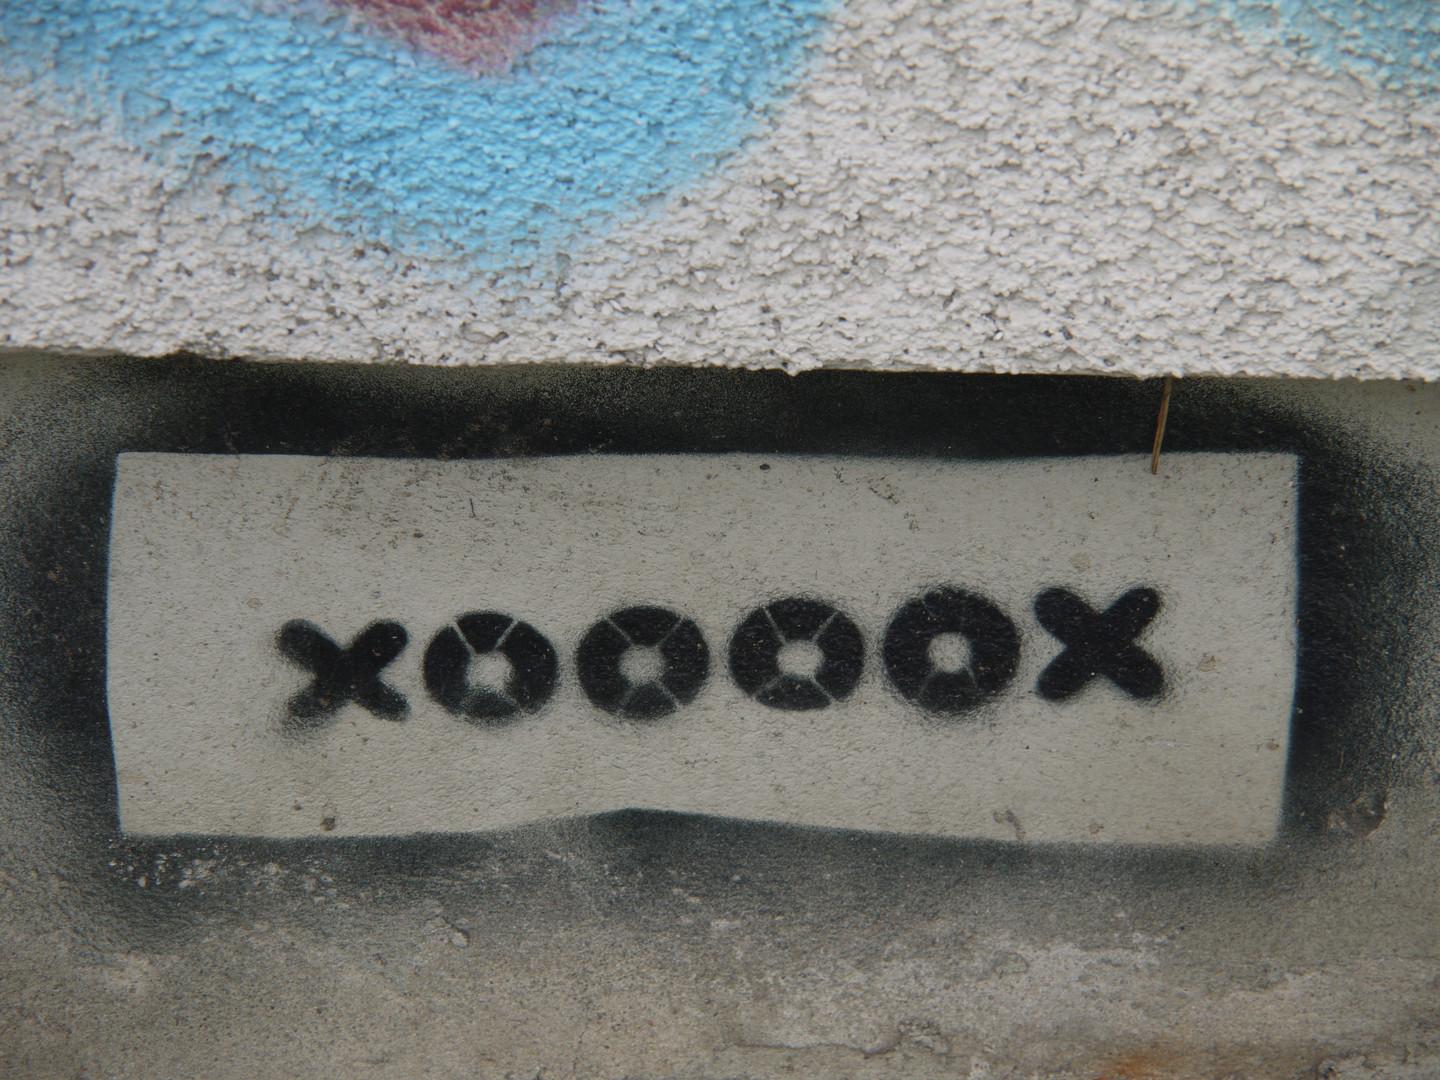 XOOOOX